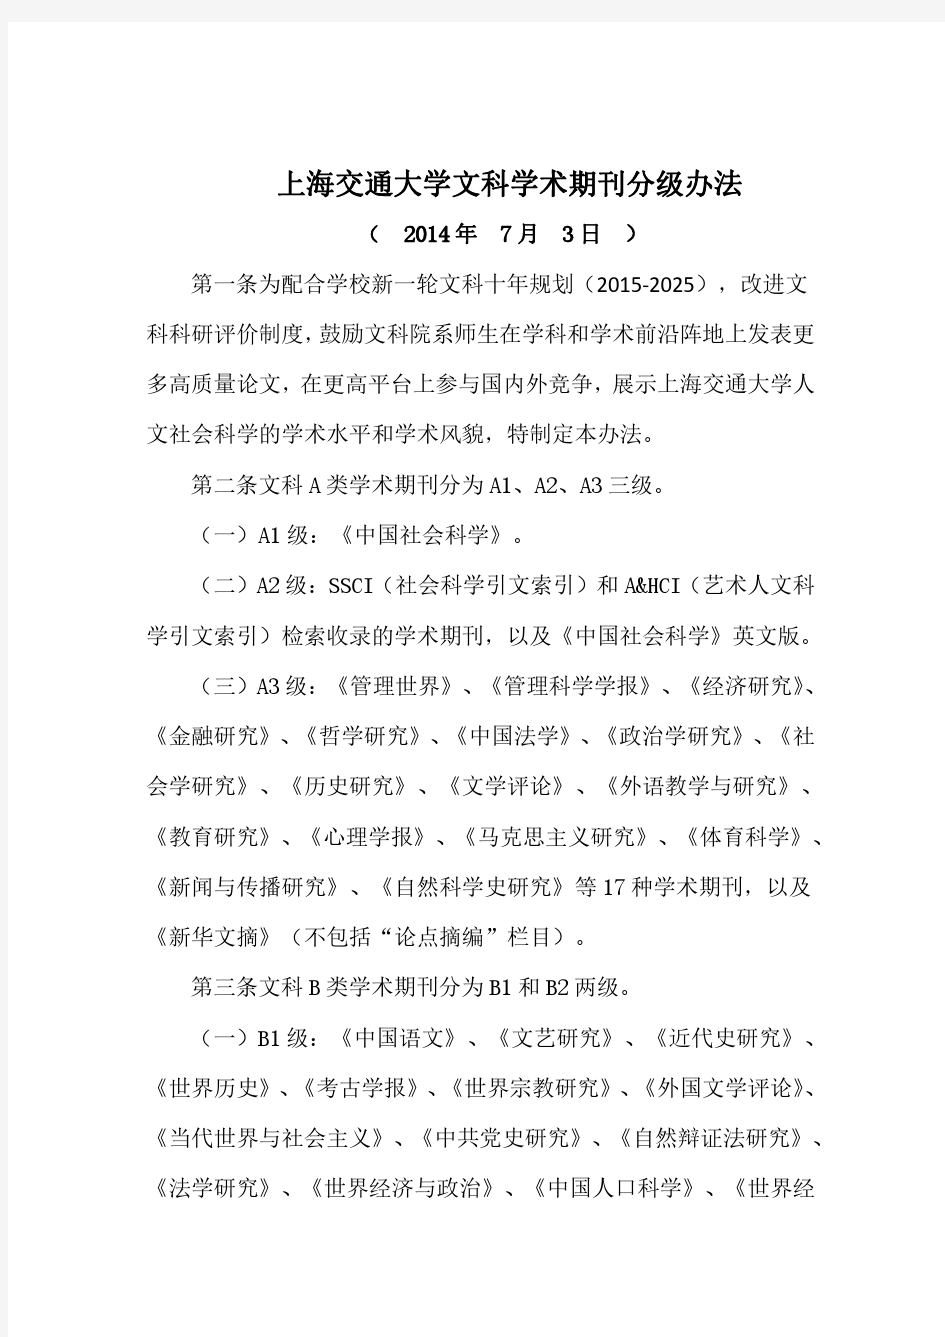 上海交通大学文科学术期刊分级办法